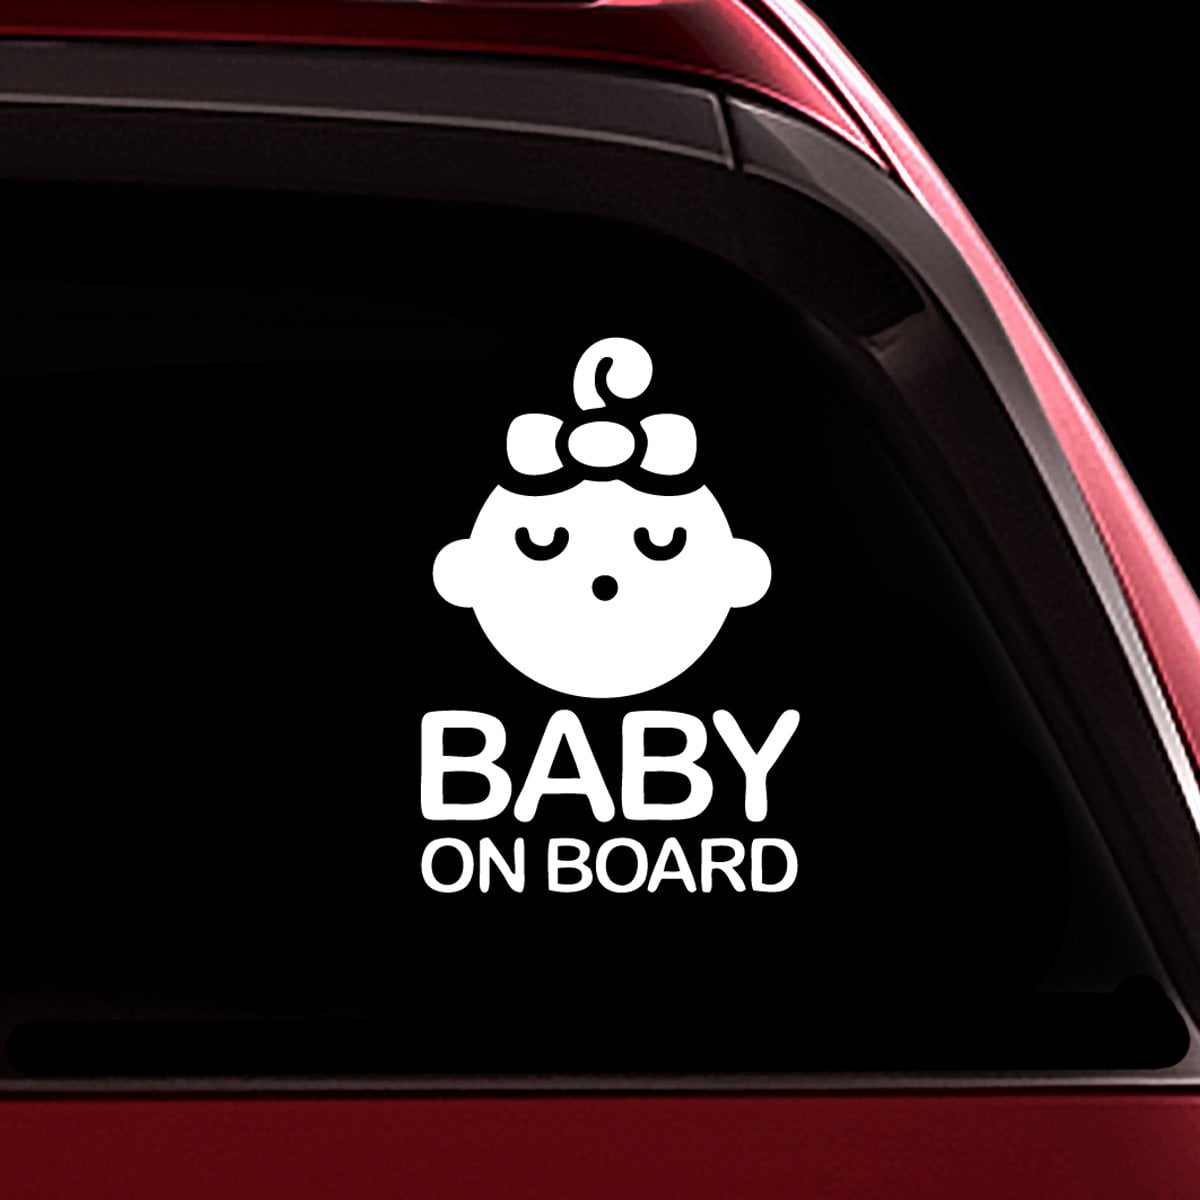 PRINCESS BABY ON BOARD PINK LOVE HEART STICKER Car Van Child Children Safety 